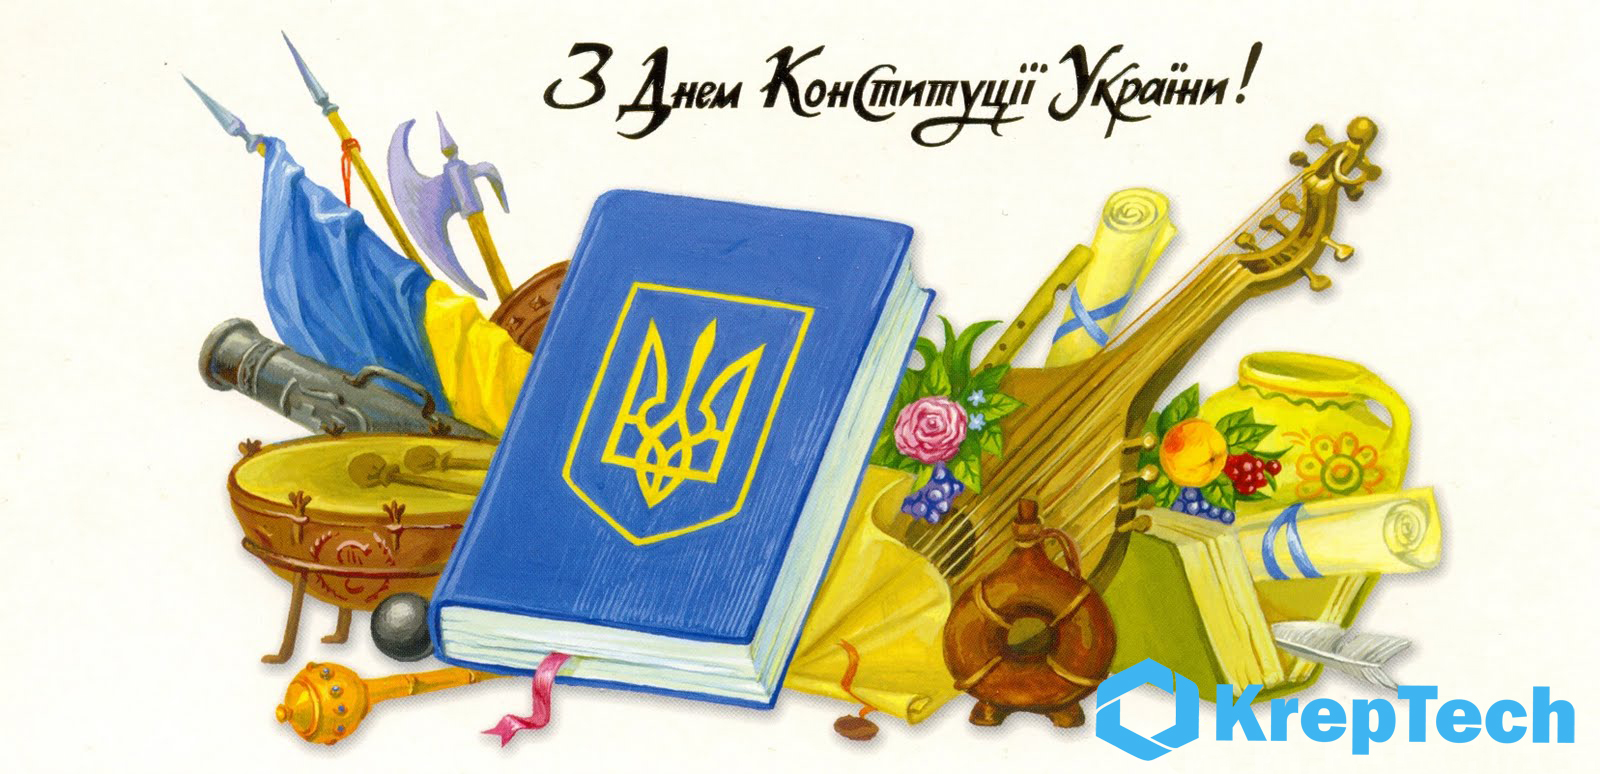 s dnem konstitutsii ukrainy kreptech 2017